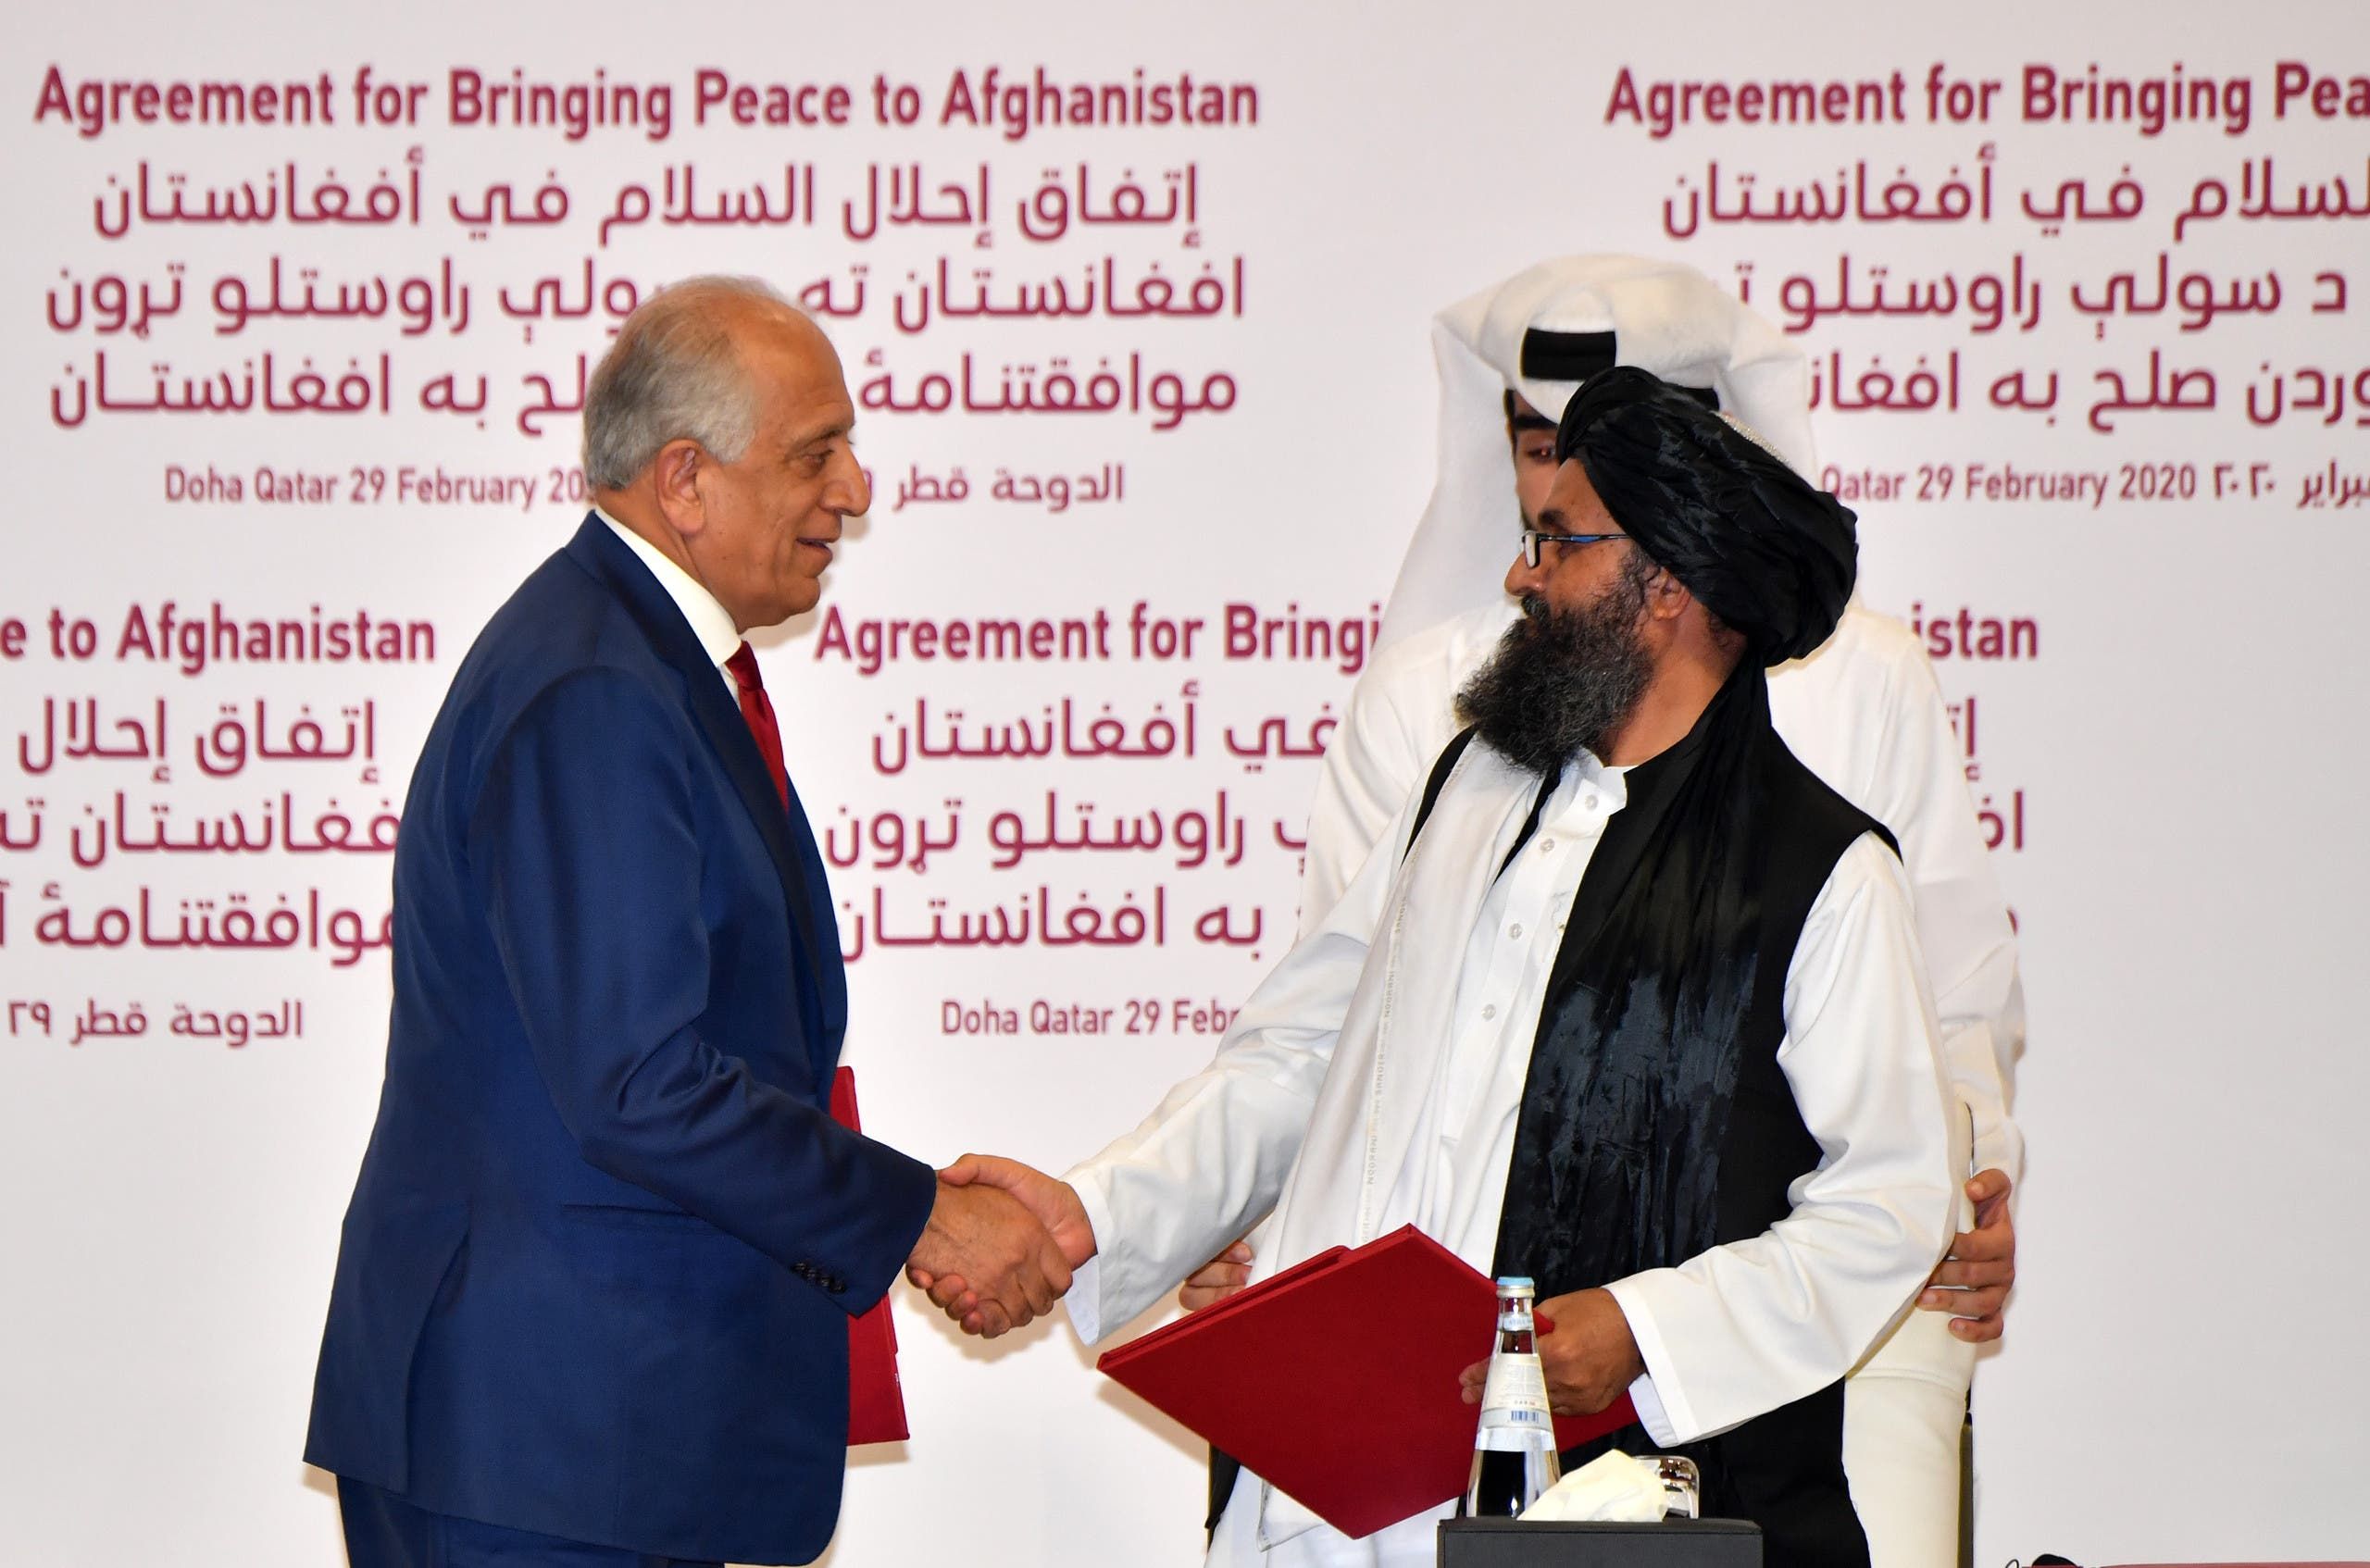 من توقيع الاتفاق في فبراير 2020 في الدوحة بين طالبان وواشنطن